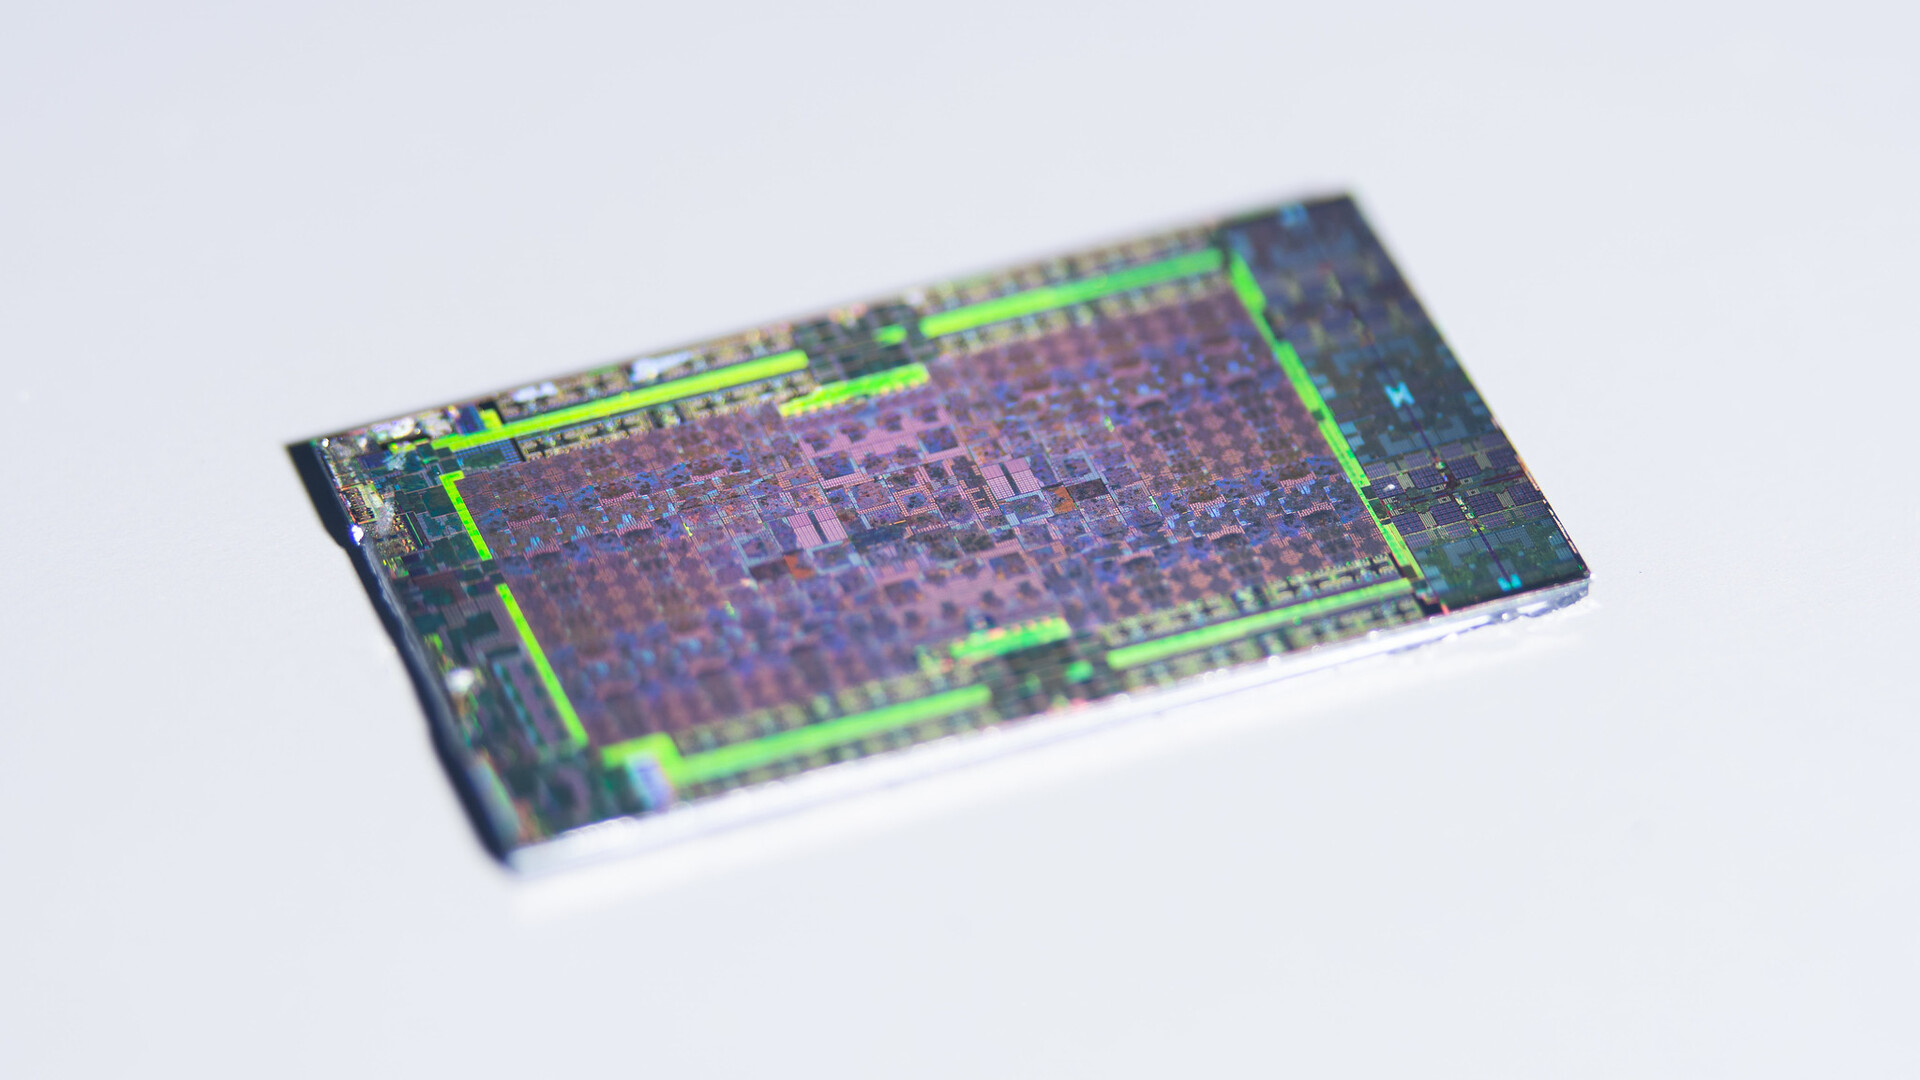 PS5 mostra os detalhes do seu processador em fotos incríveis! - 4gnews